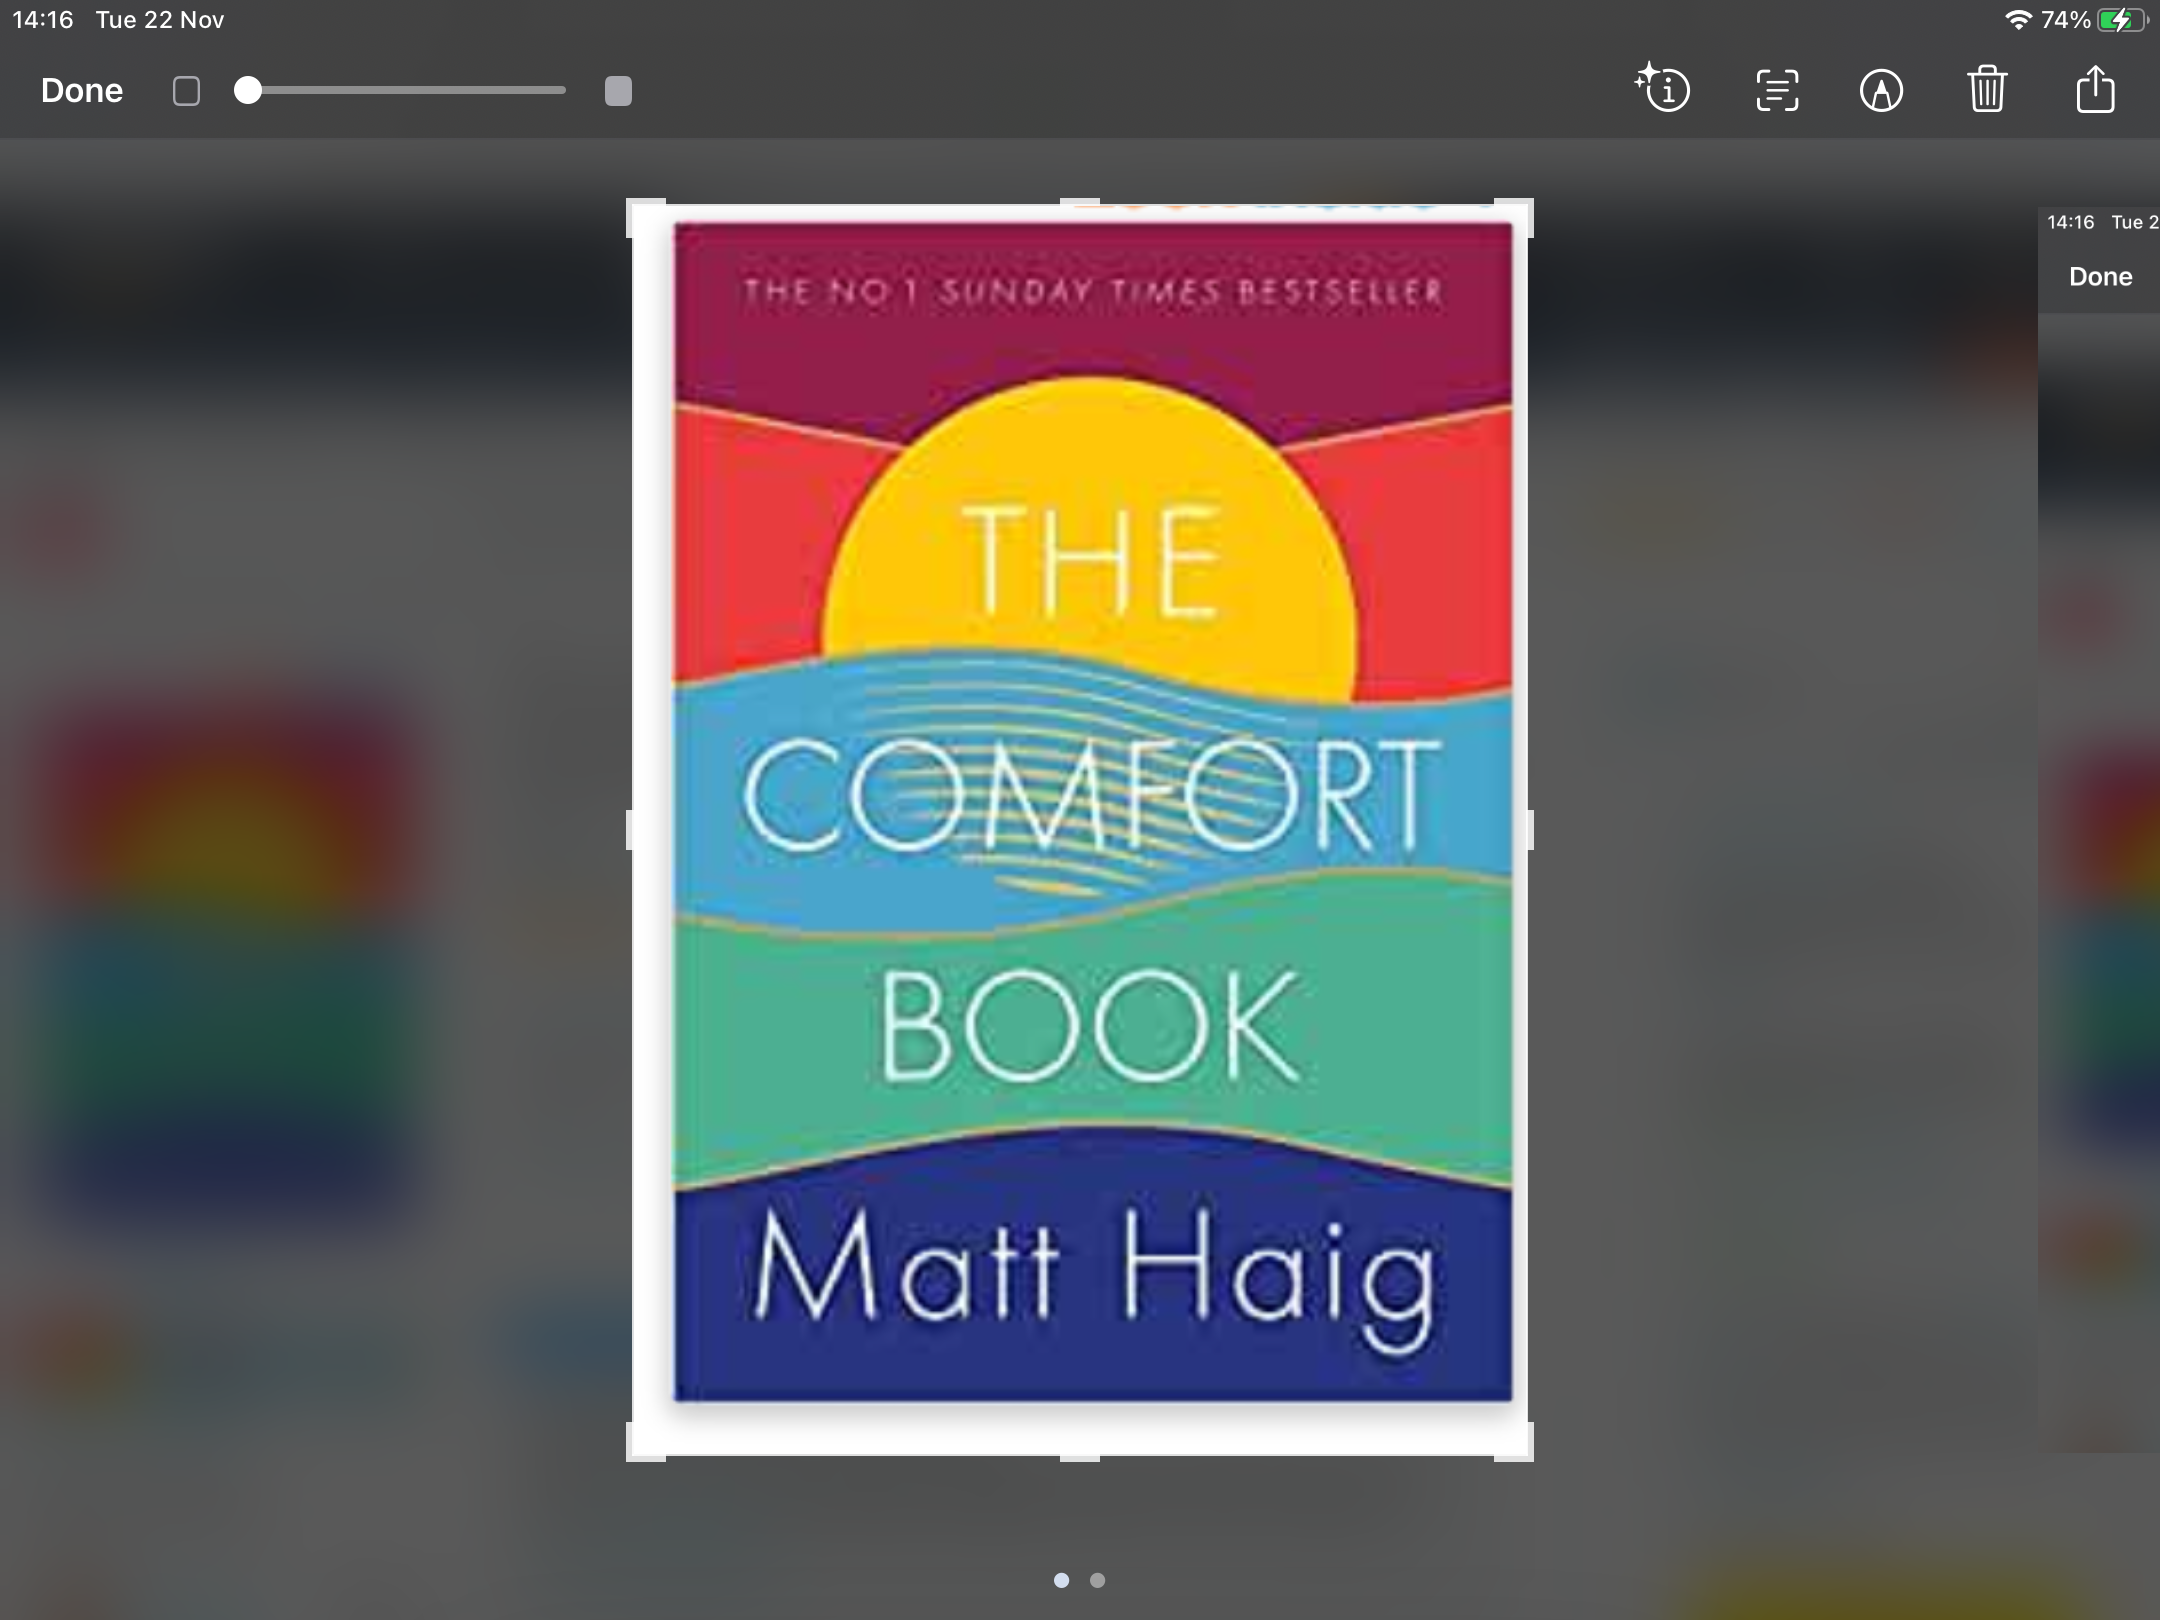 Book - The Comfort Book by Matt Haig